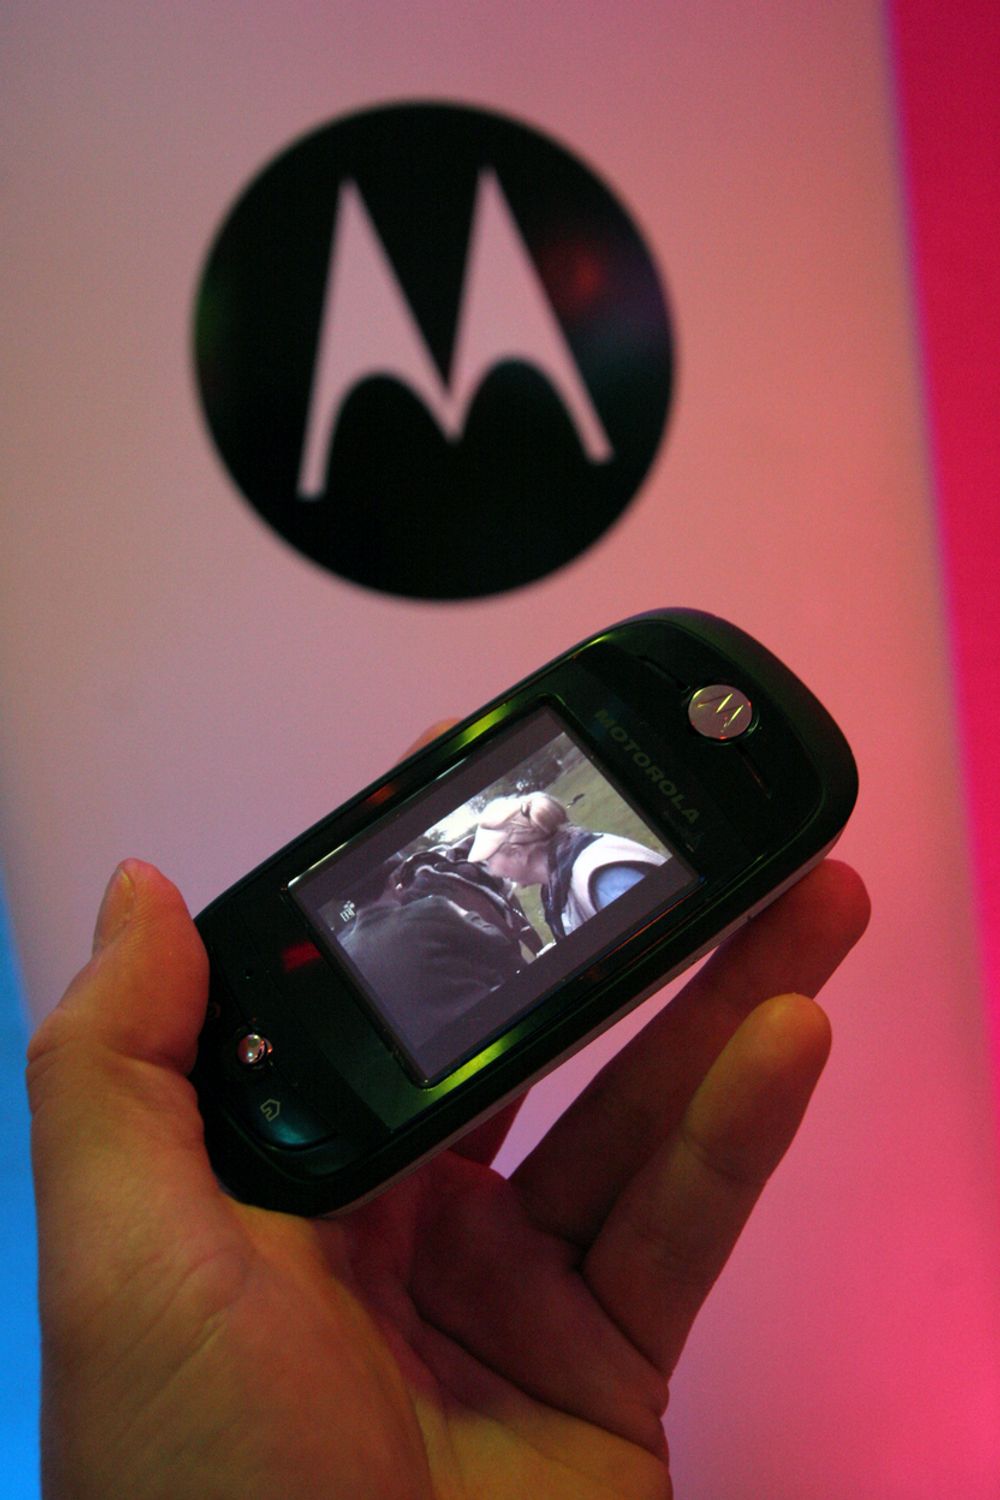 HEMMELIG: Her ser du Motorolas prototype for en ny type mobilvideotelefoni. Utviklerne sier til teknisk Ukeblad at sluttresultatet, det du kan kjøpe i butikken, vil se annerledes ut, samt at den kommende 3G-mobilen vil være betydelig slankere.